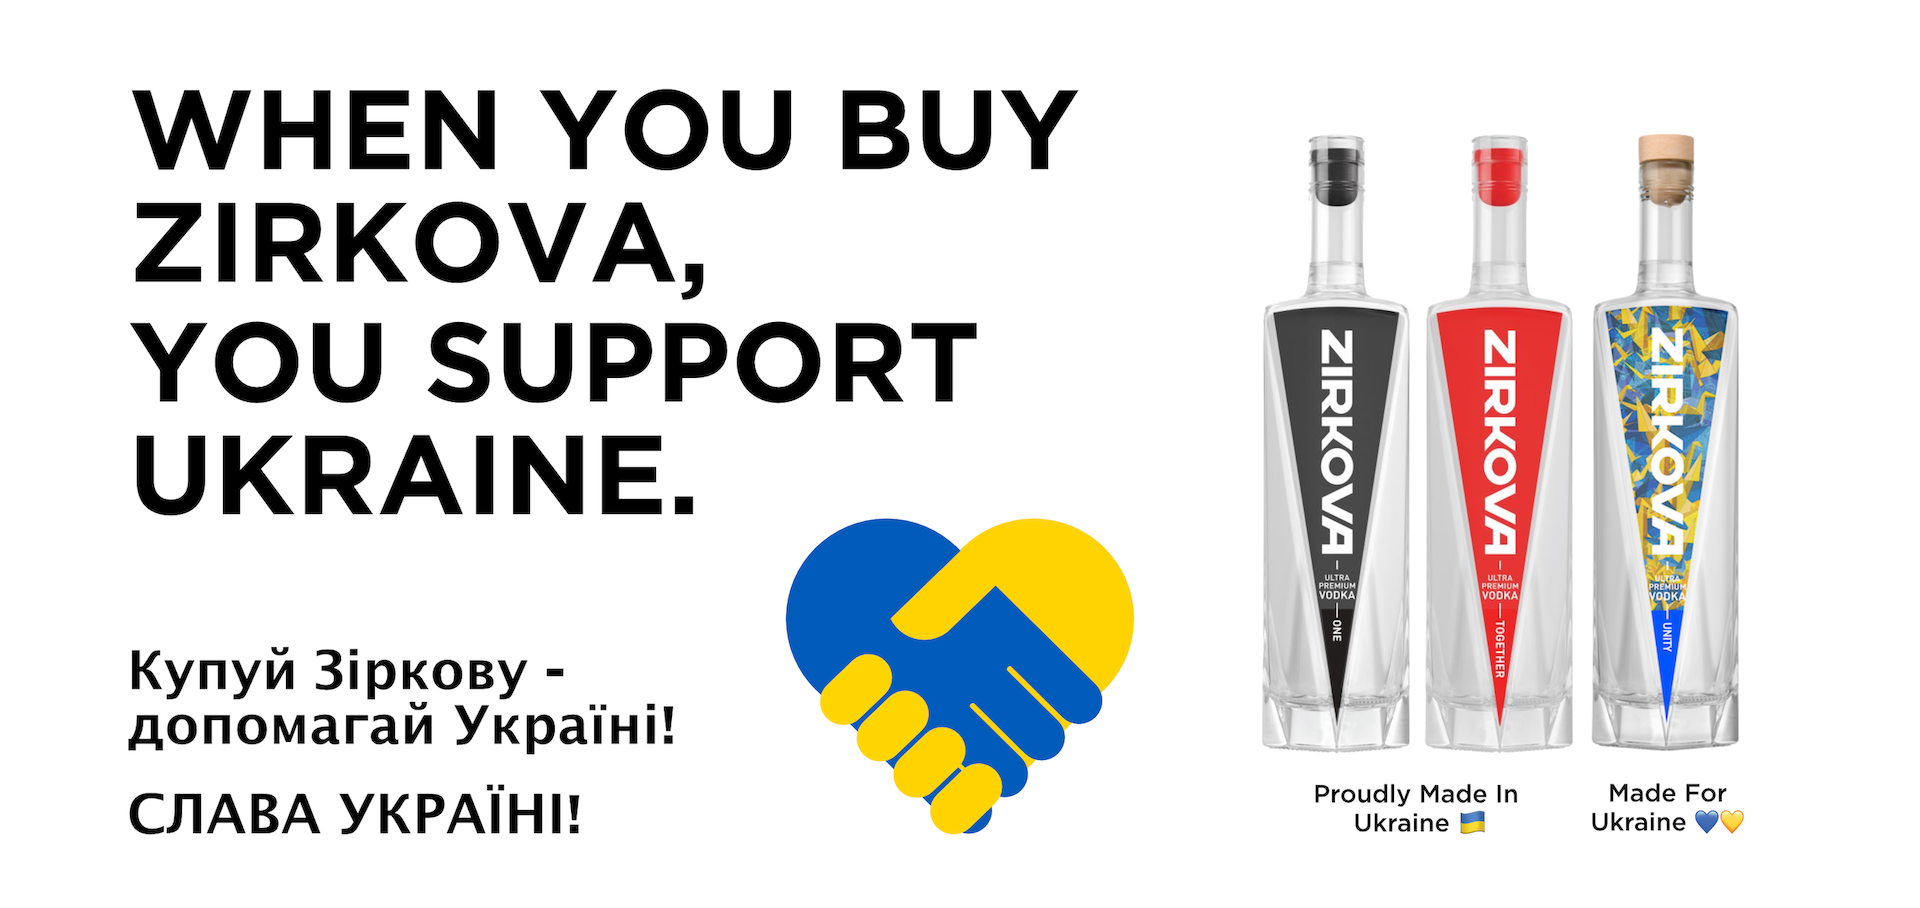 When you buy Zirkova, you support Ukraine